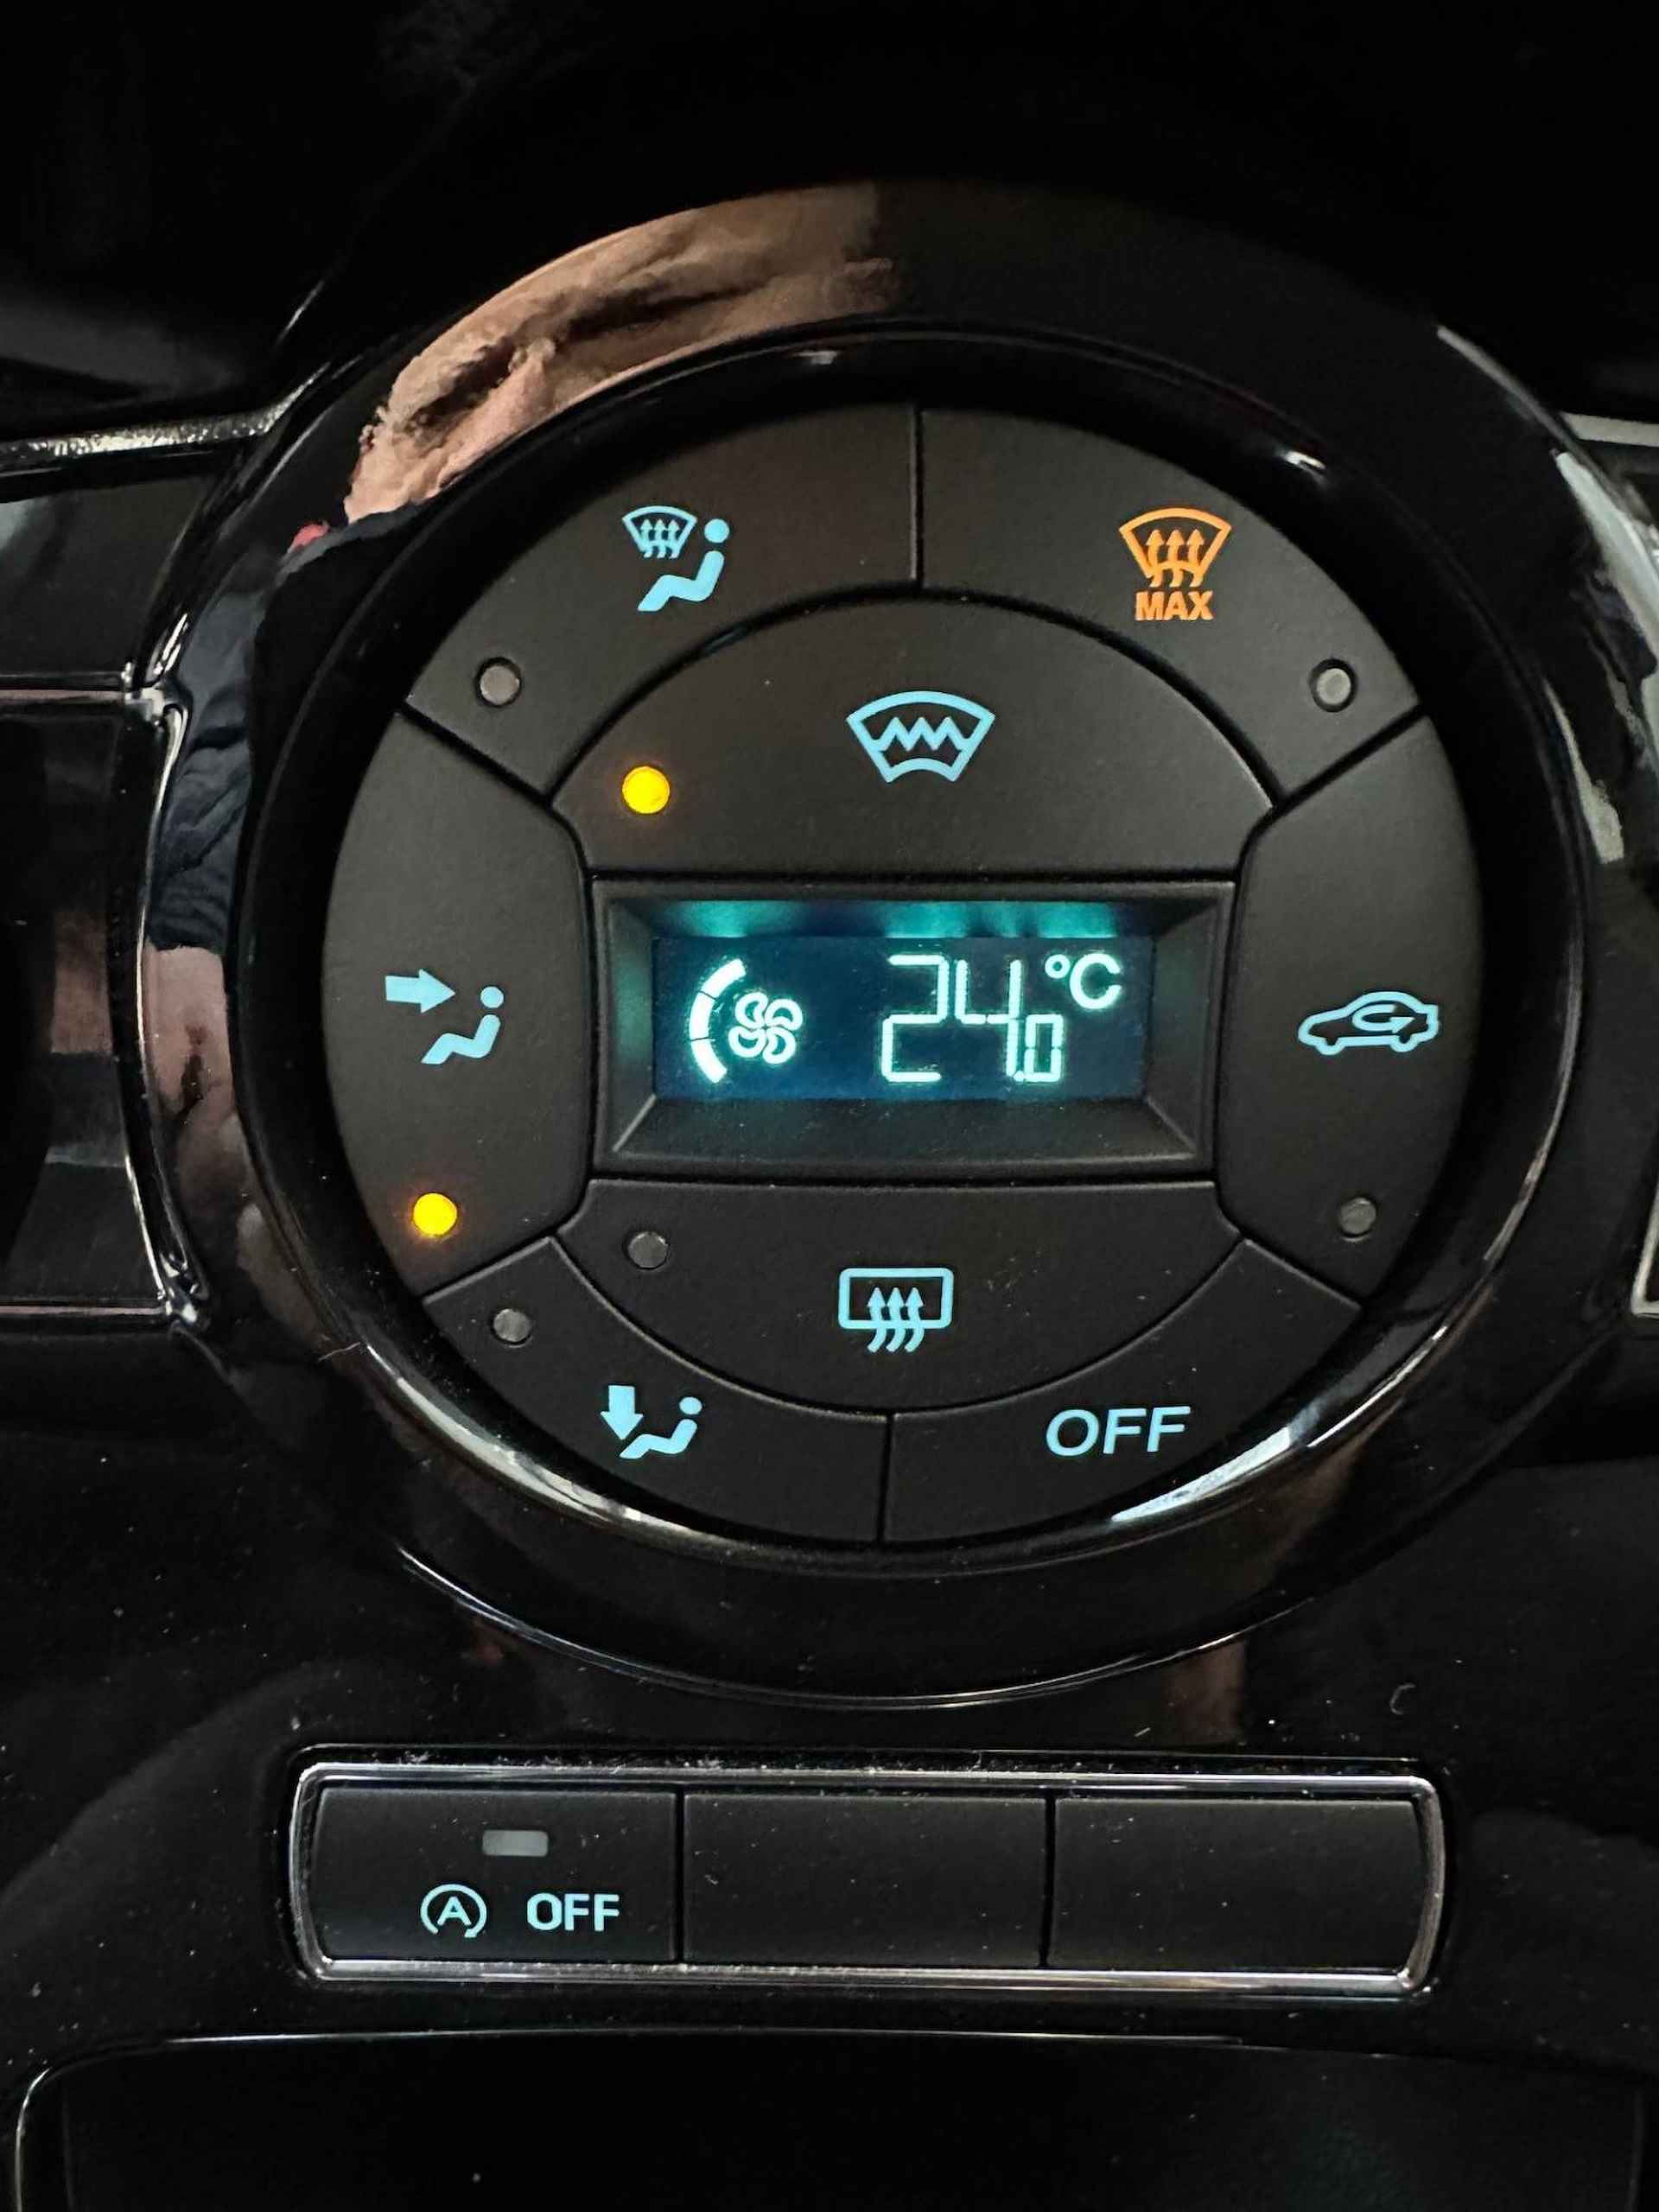 Ford Fiesta 1.0 Titanium 29.000 km Airco | lm-velgen | navigatie | BOVAG garantie | - 11/25